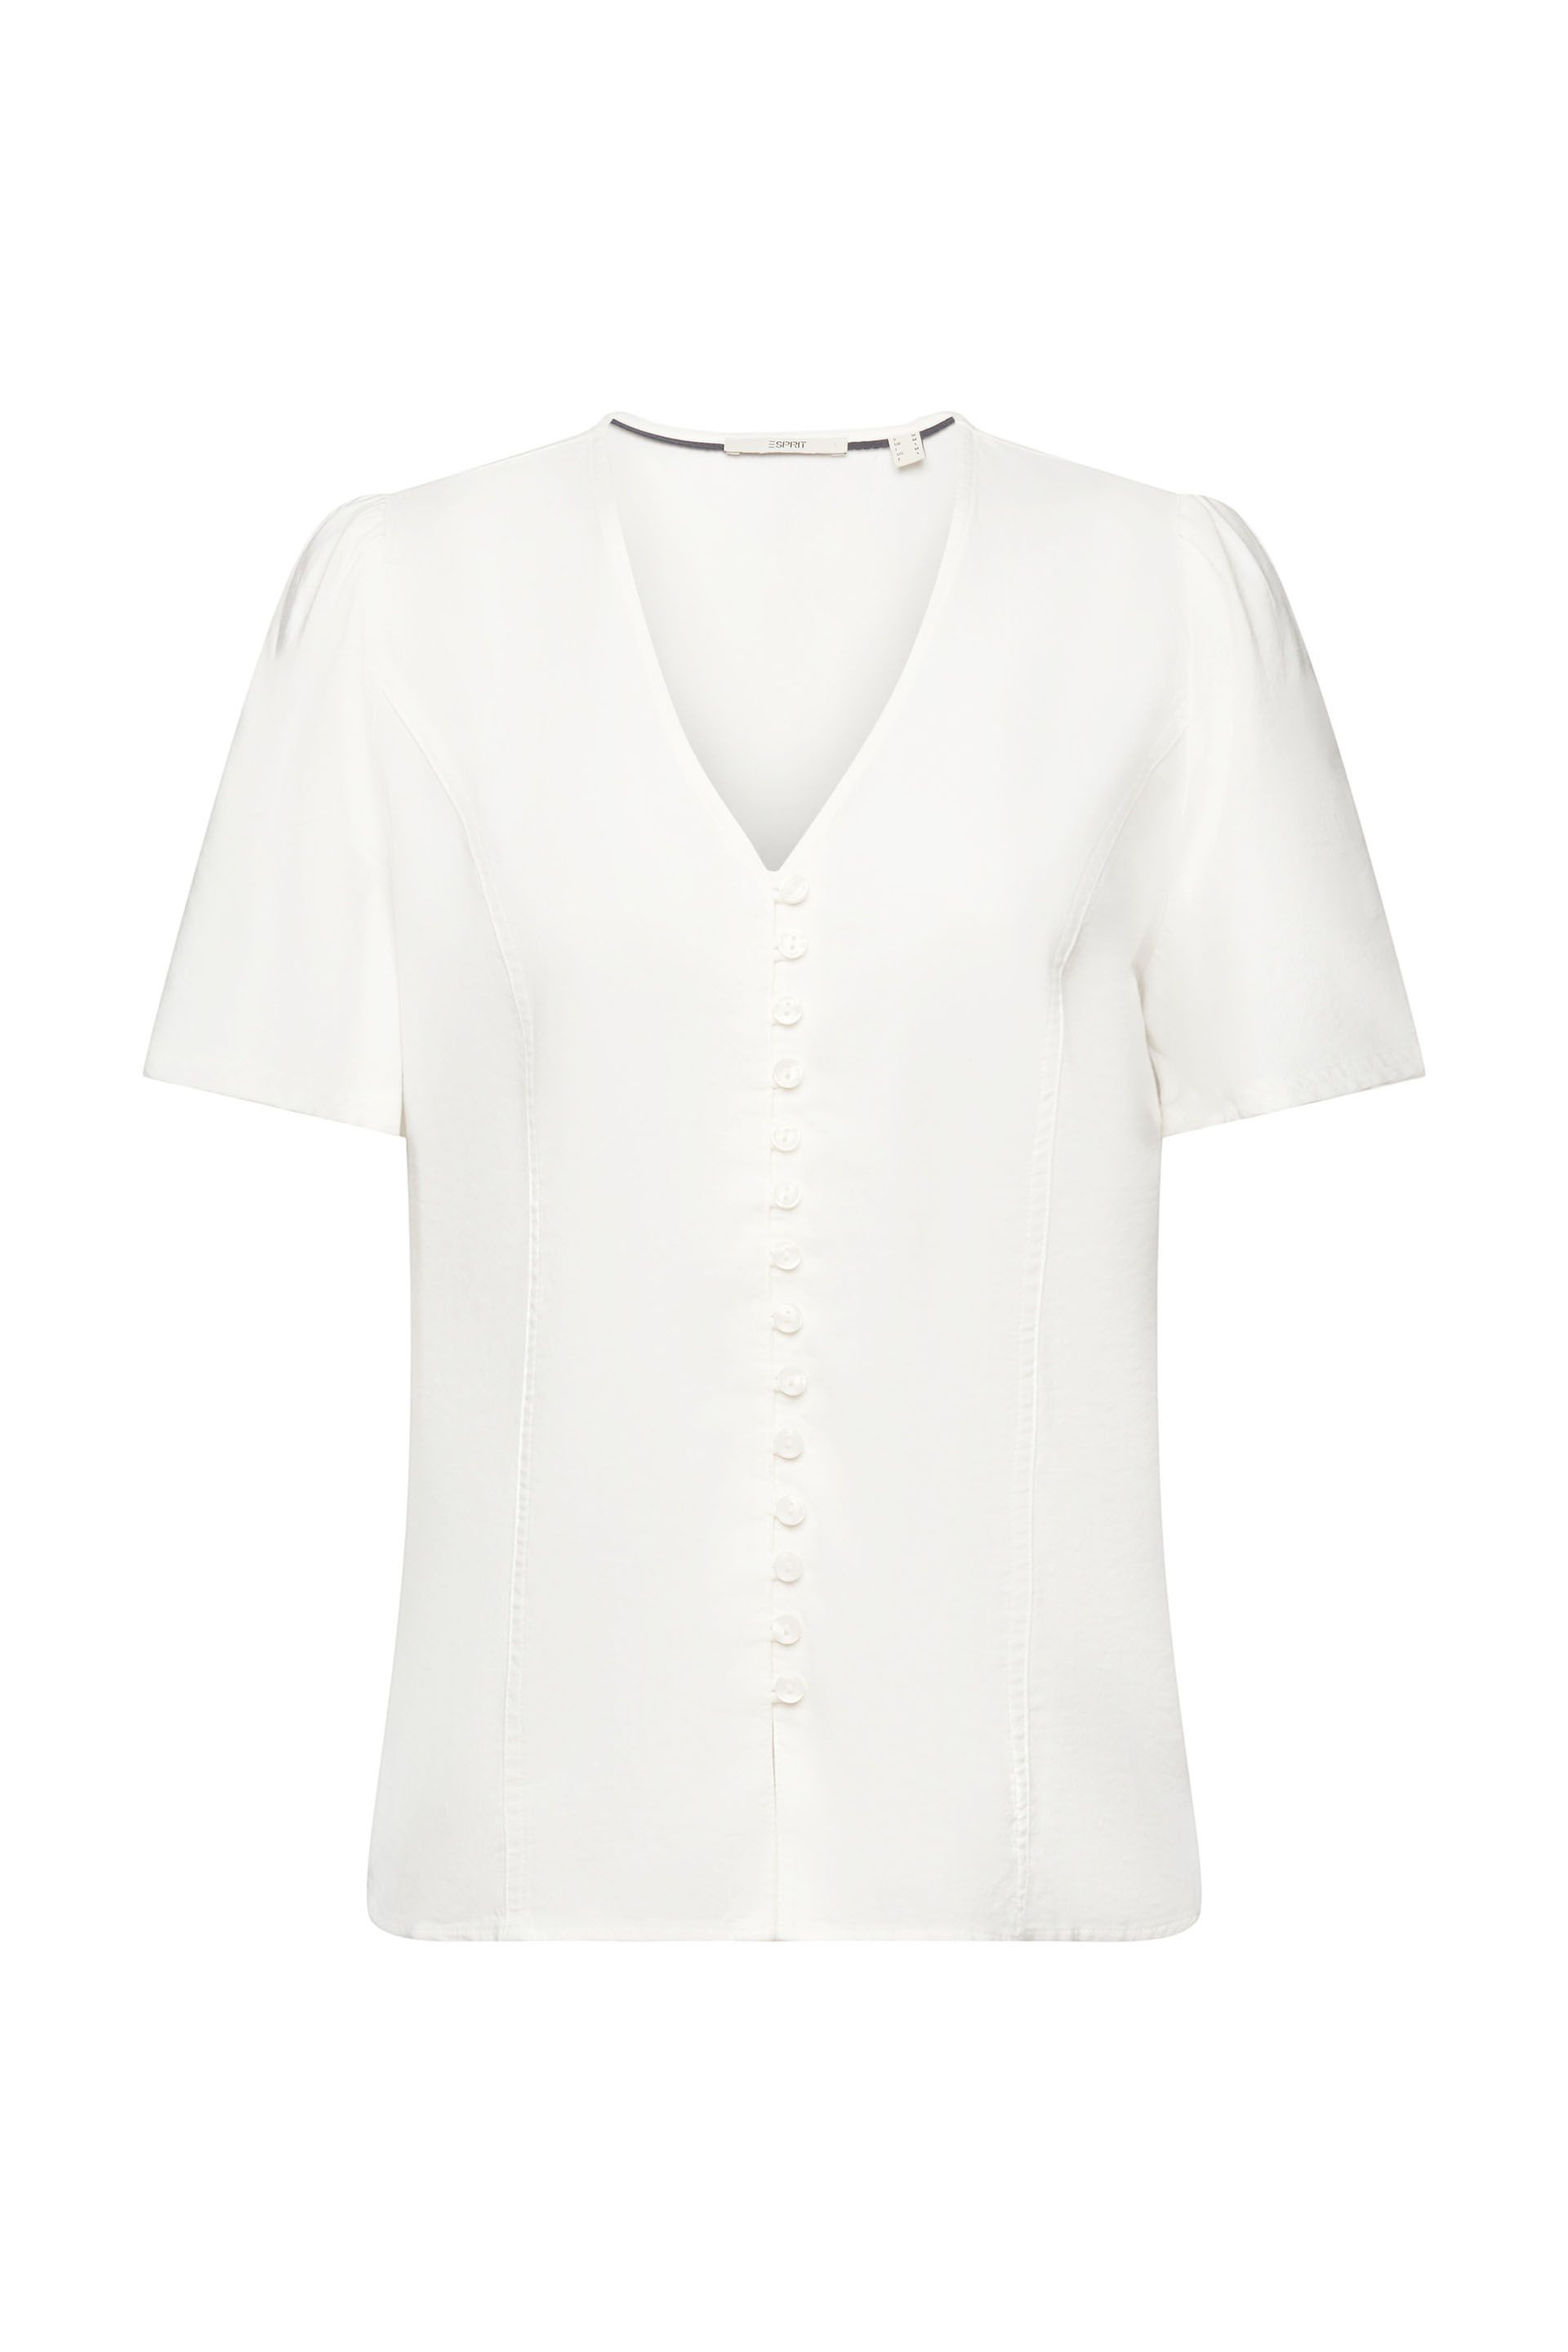 Esprit - V-neck blouse, White, large image number 0